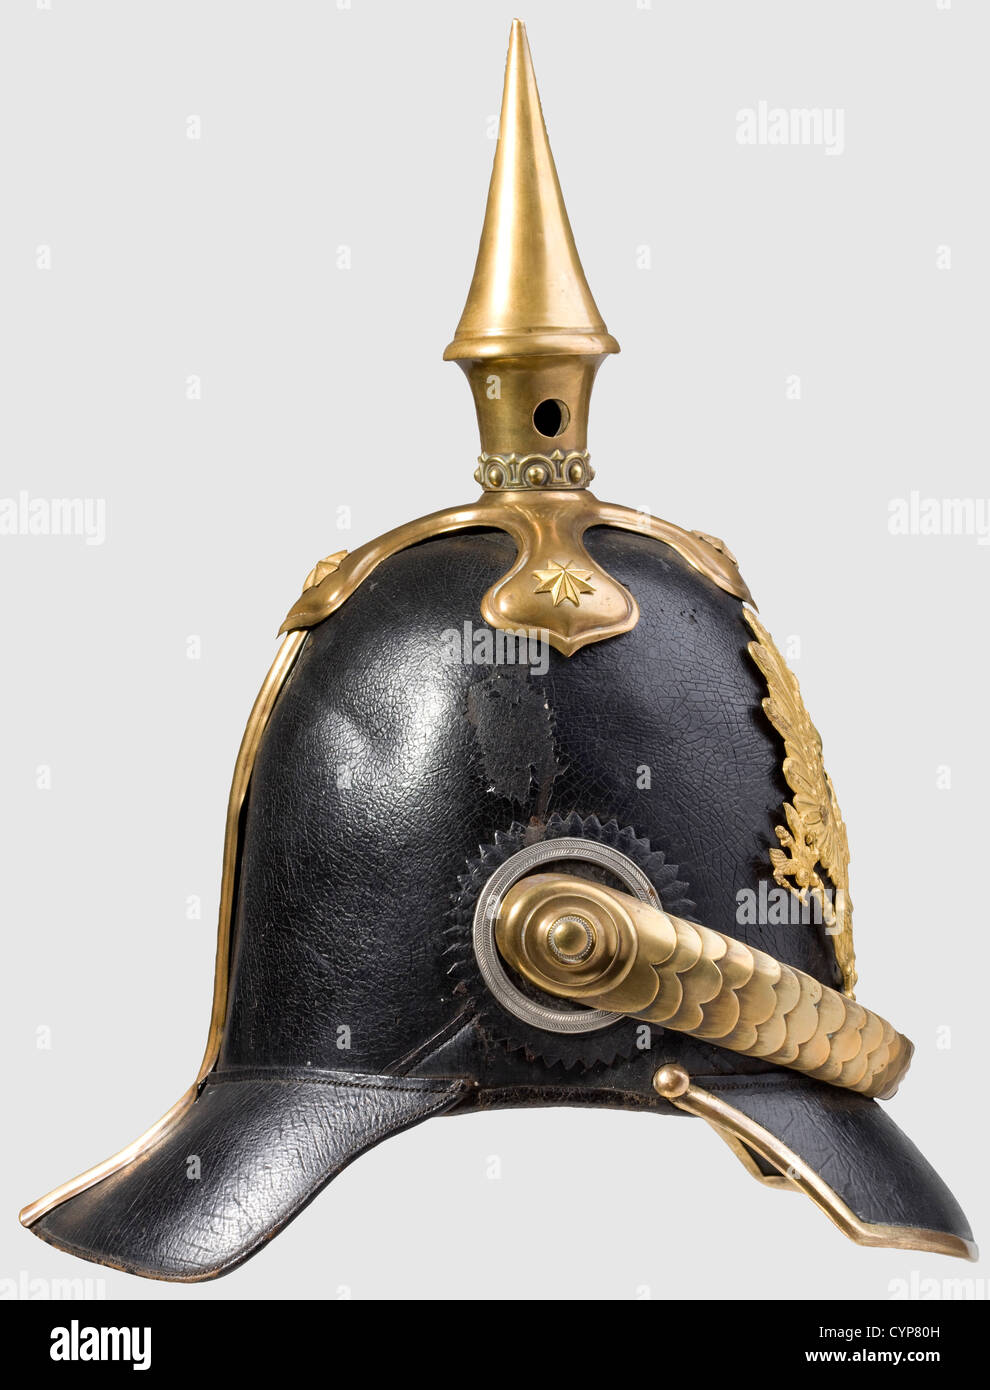 Un modelo 1842 casco para oficiales de infantería, cráneo de cuero lacado  negro, accesorios dorados. Águila en dorado original vivo con bordes  pulidos. Básculas de madera, berberberberechos. Viseras forradas en  verde/rojo, forro